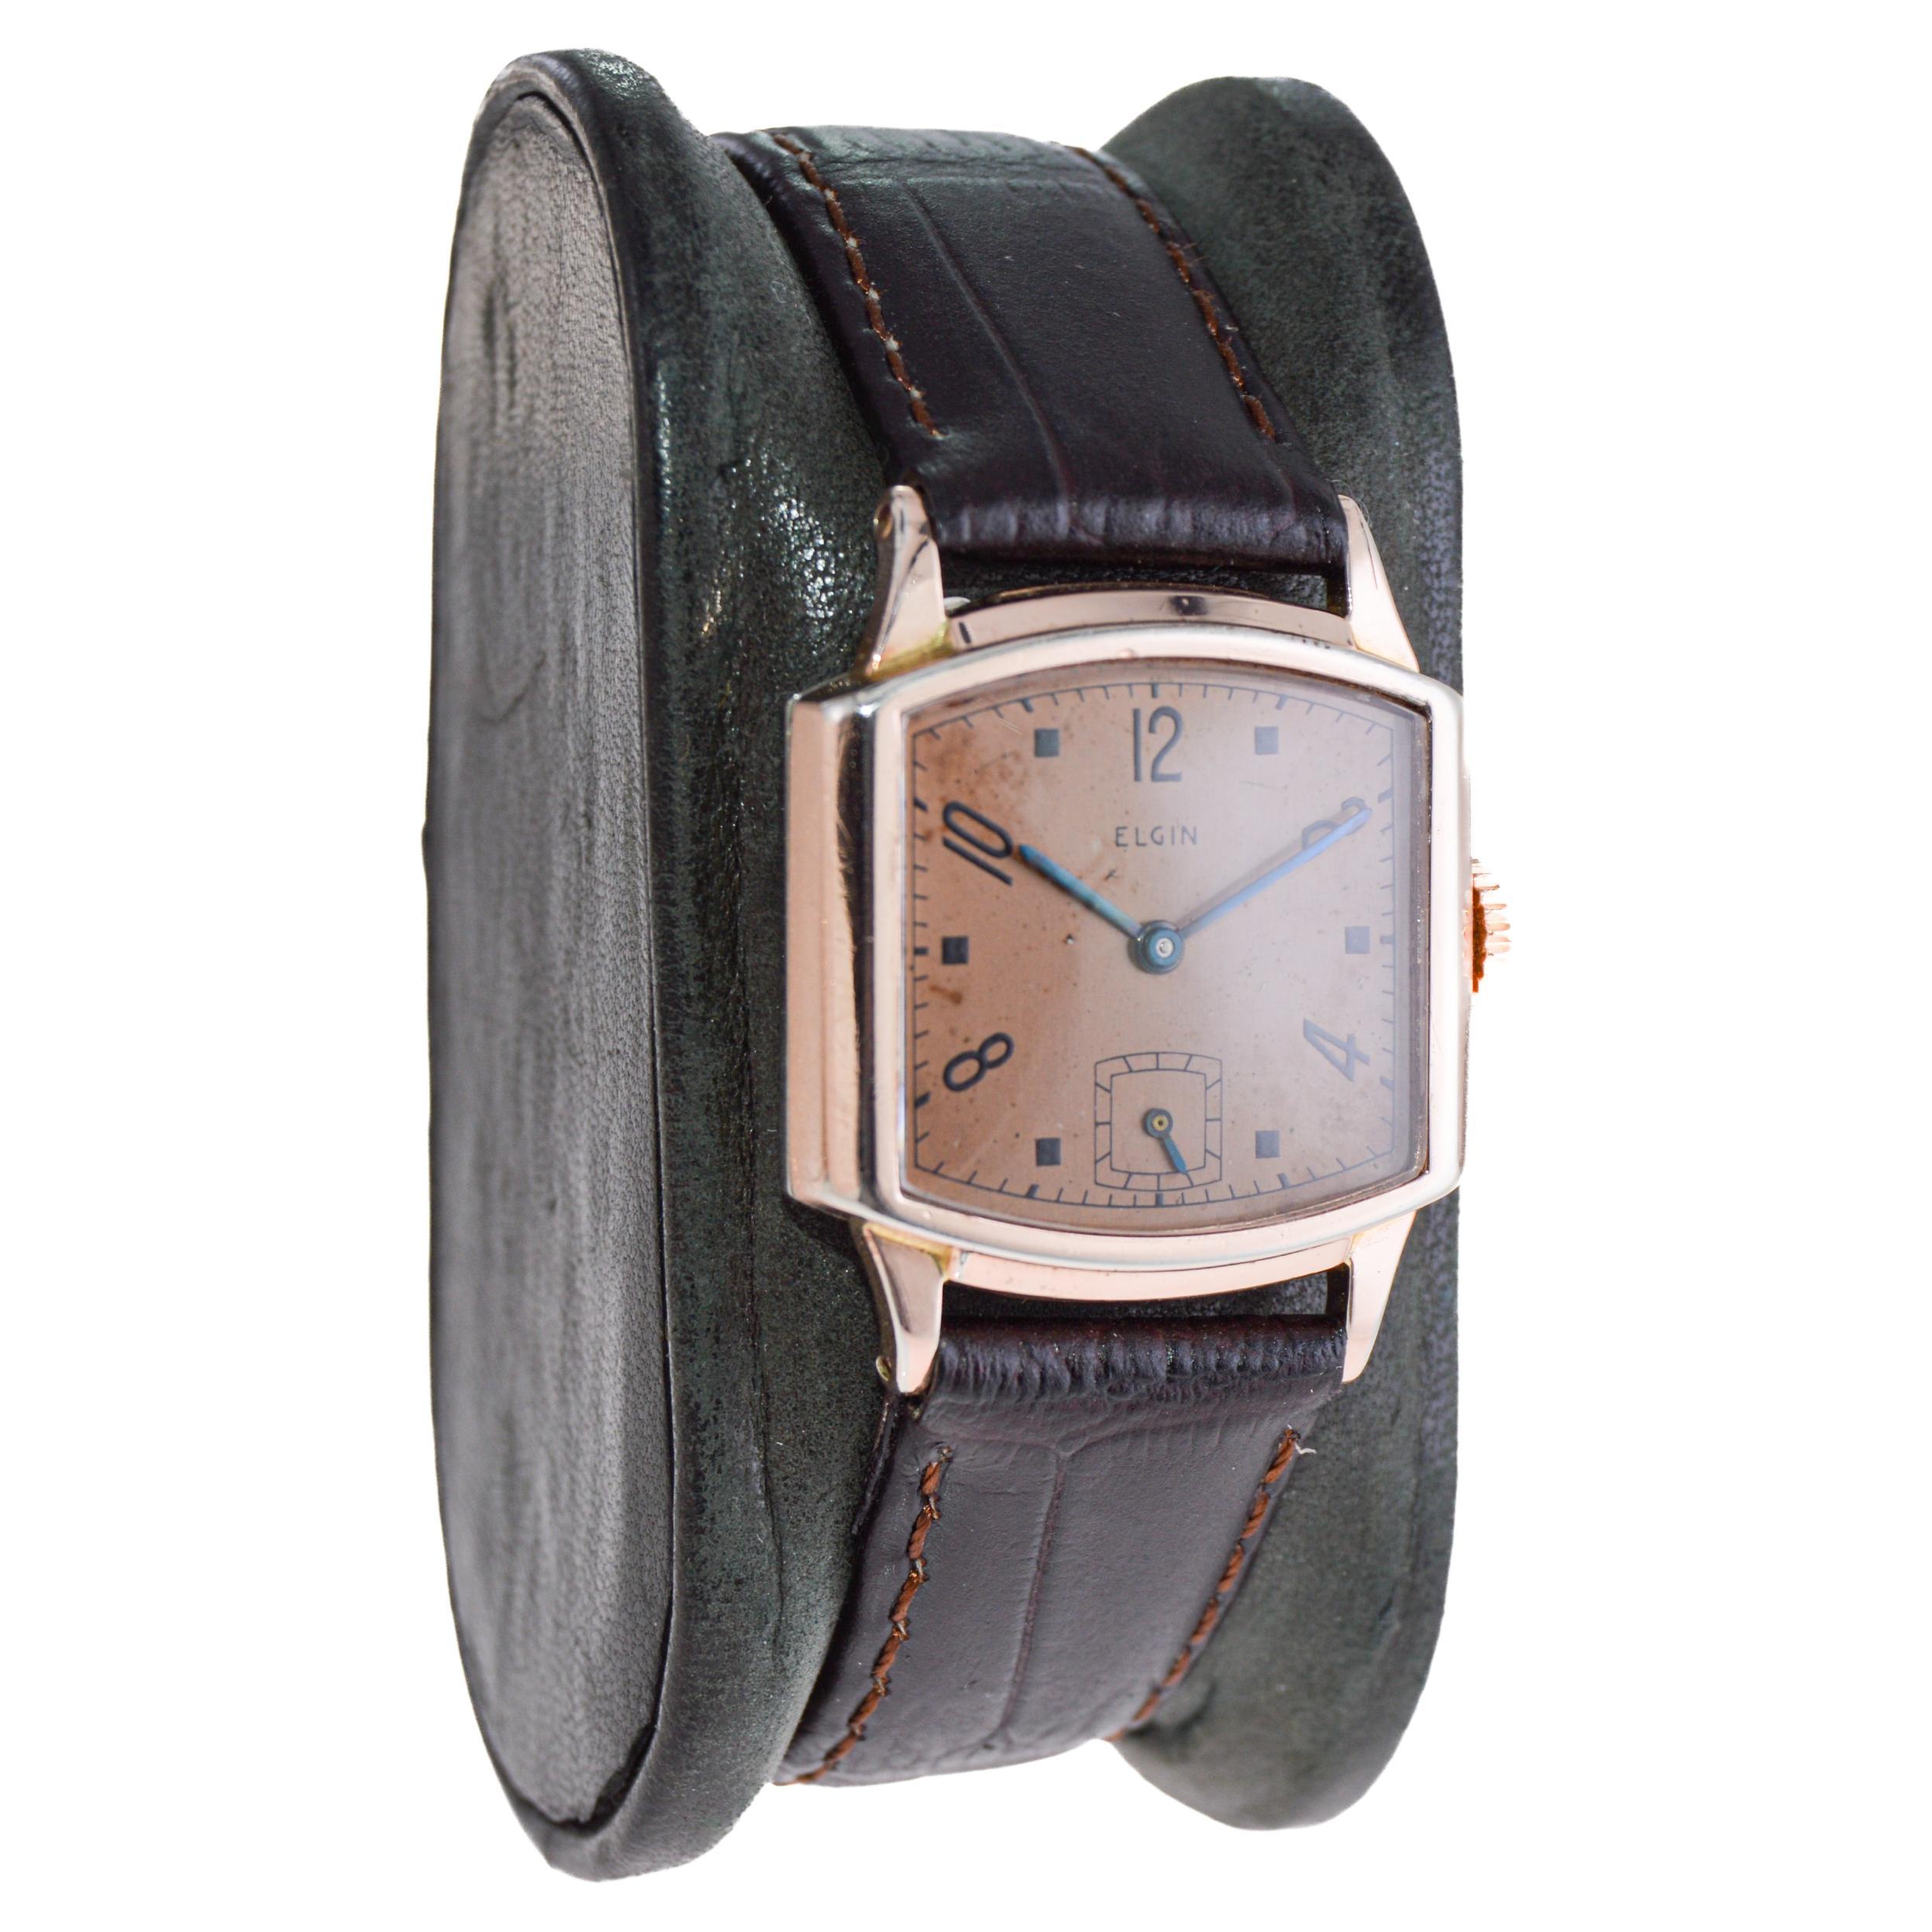 FABRIK / HAUS: Elgin Watch Company
STIL / REFERENZ: Art Deco / Tortue Form
METALL / MATERIAL: Rose Gold Gefüllt
CIRCA / JAHR: 1940er Jahre
ABMESSUNGEN / GRÖSSE: Länge 32mm X Breite 26mm
UHRWERK / KALIBER: Handaufzug / 15 Jewels / Kaliber